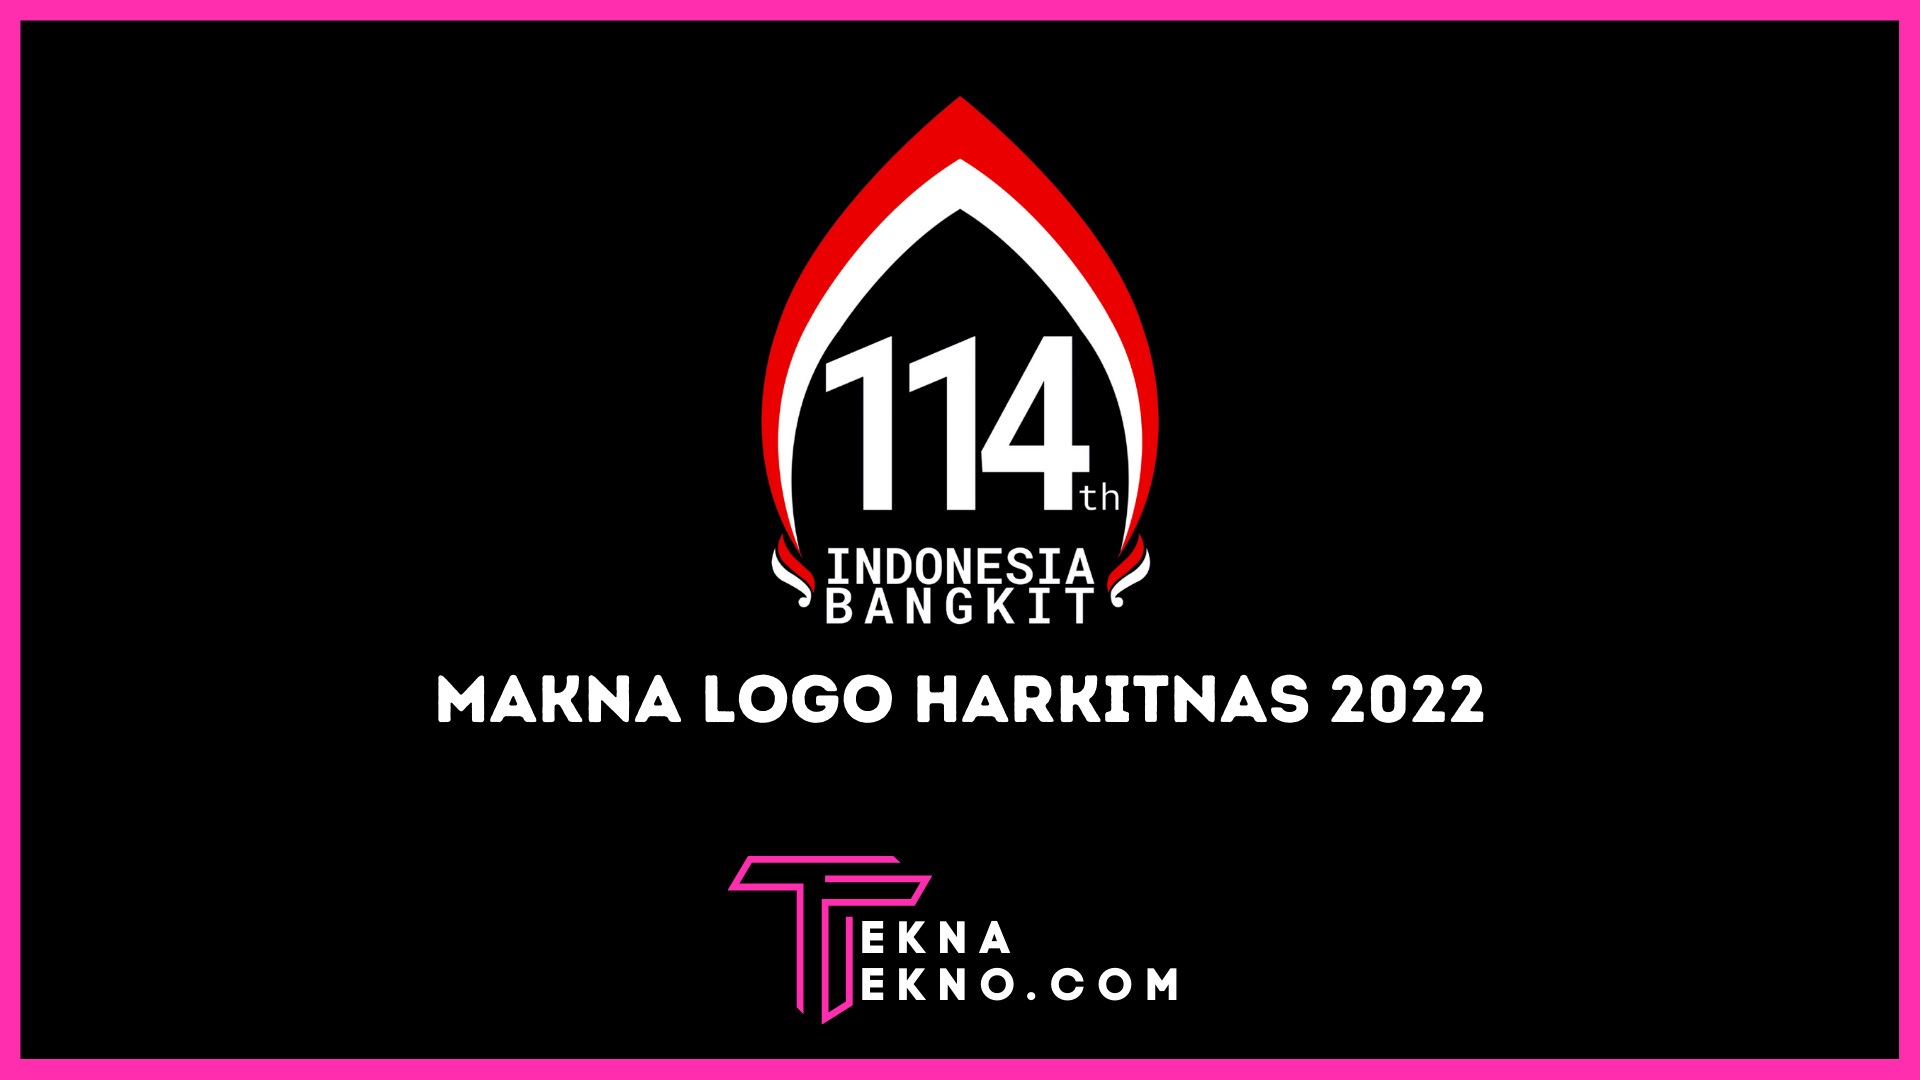 Makna Dibalik Tema dan Logo Hari Kebangkitan Nasional 2022 ke 114